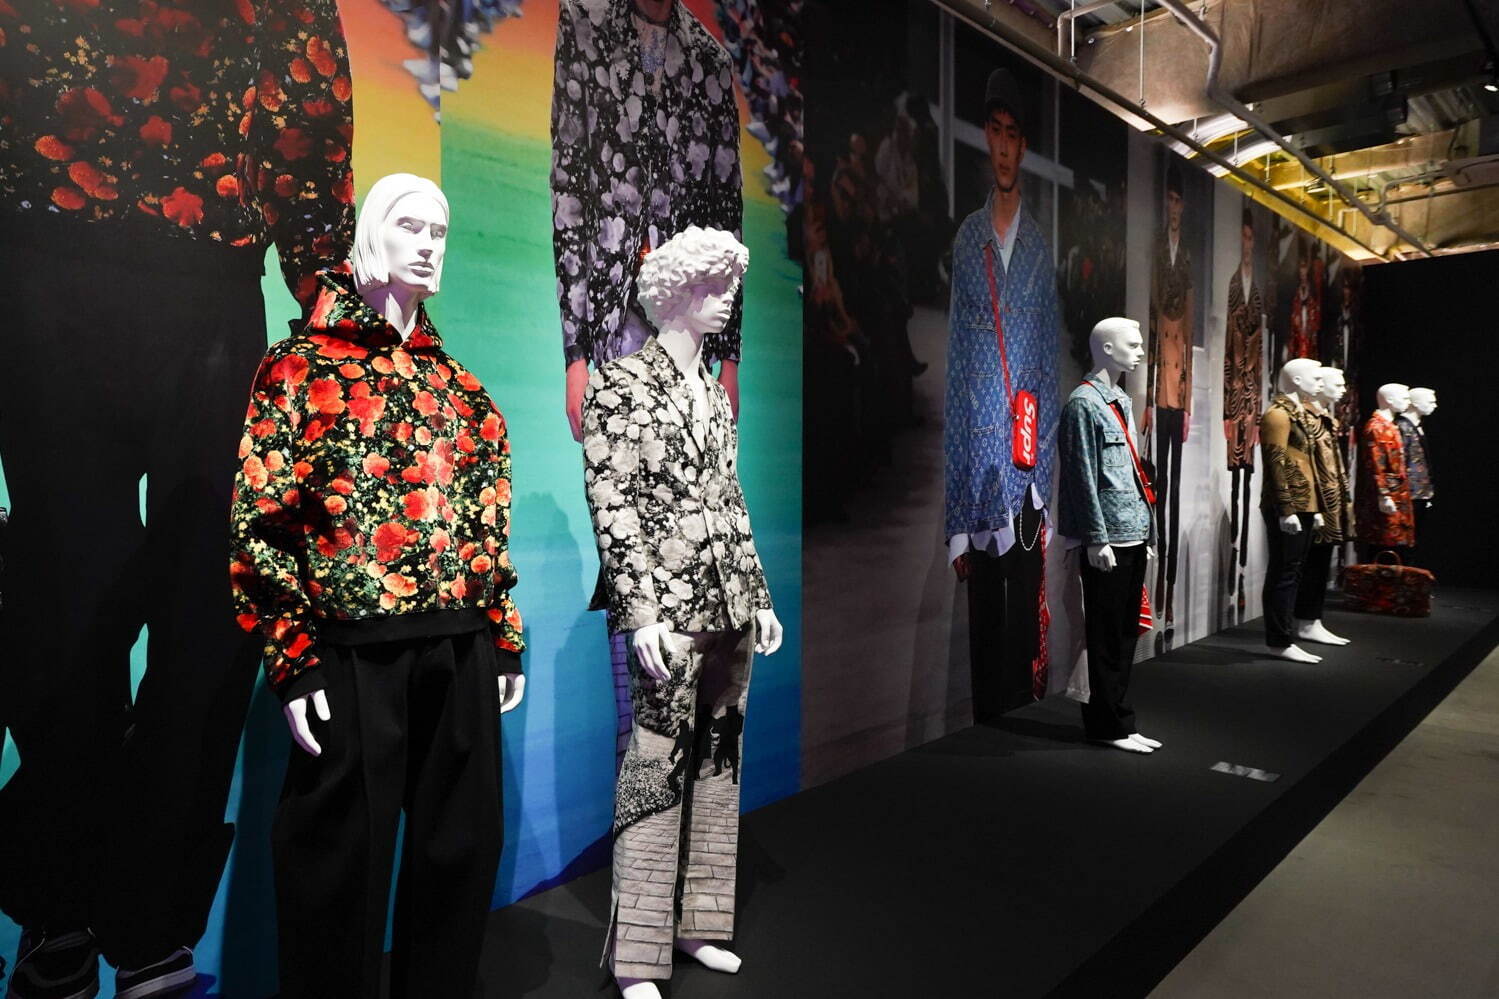 Louis Vuitton history showcased at Paris exhibition